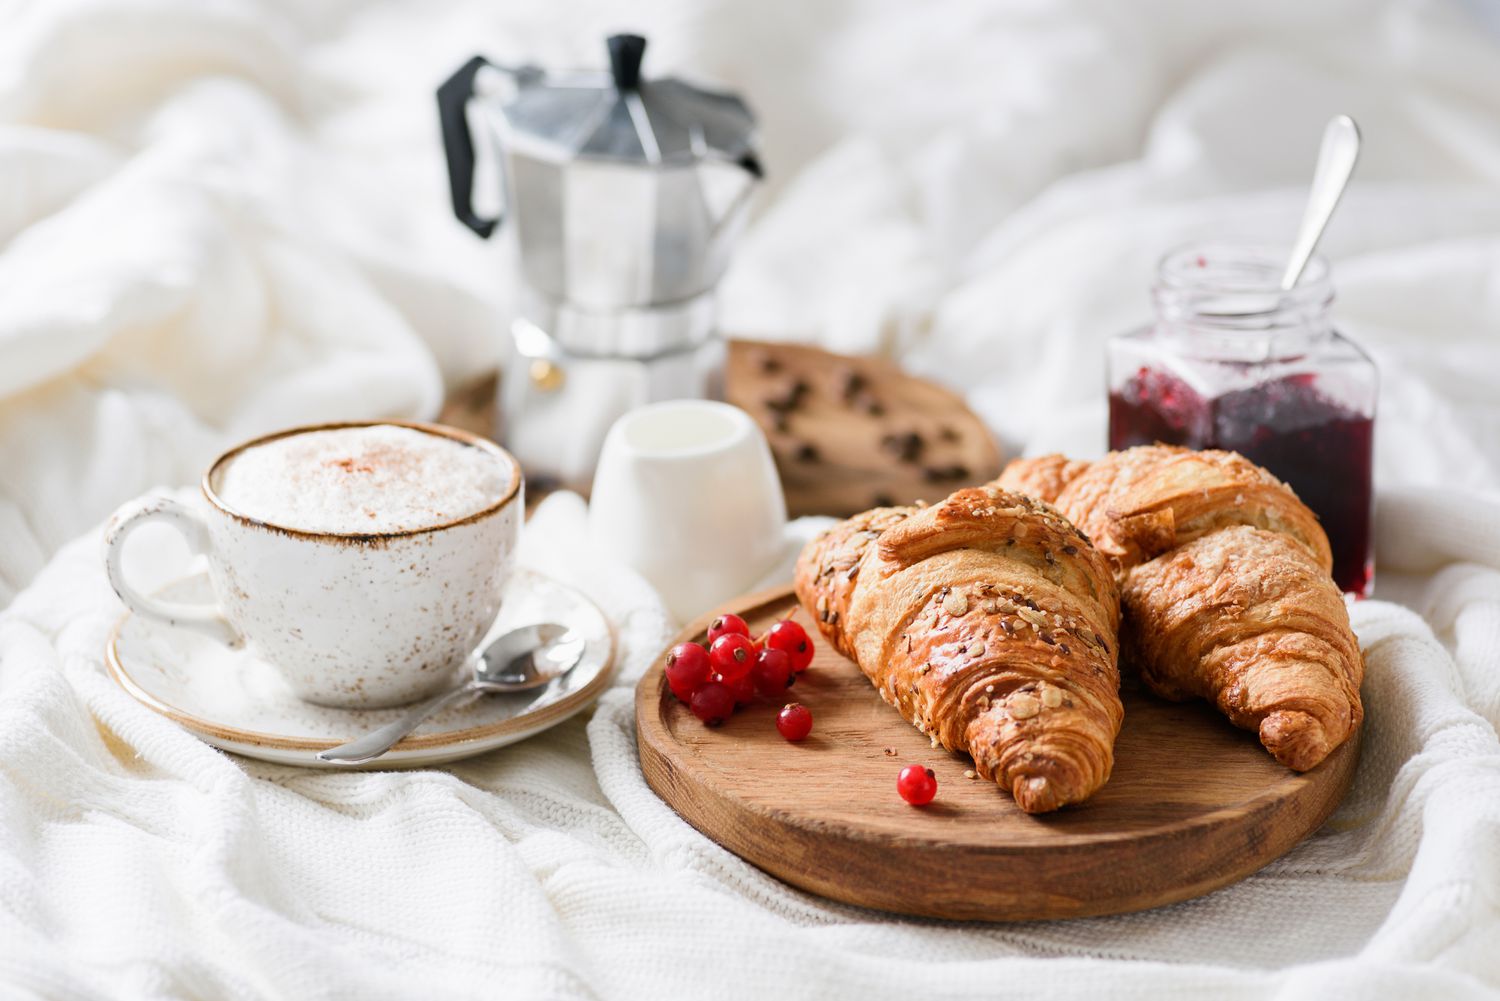 Frühstück im Bett mit Croissants, Kaffee und Marmelade